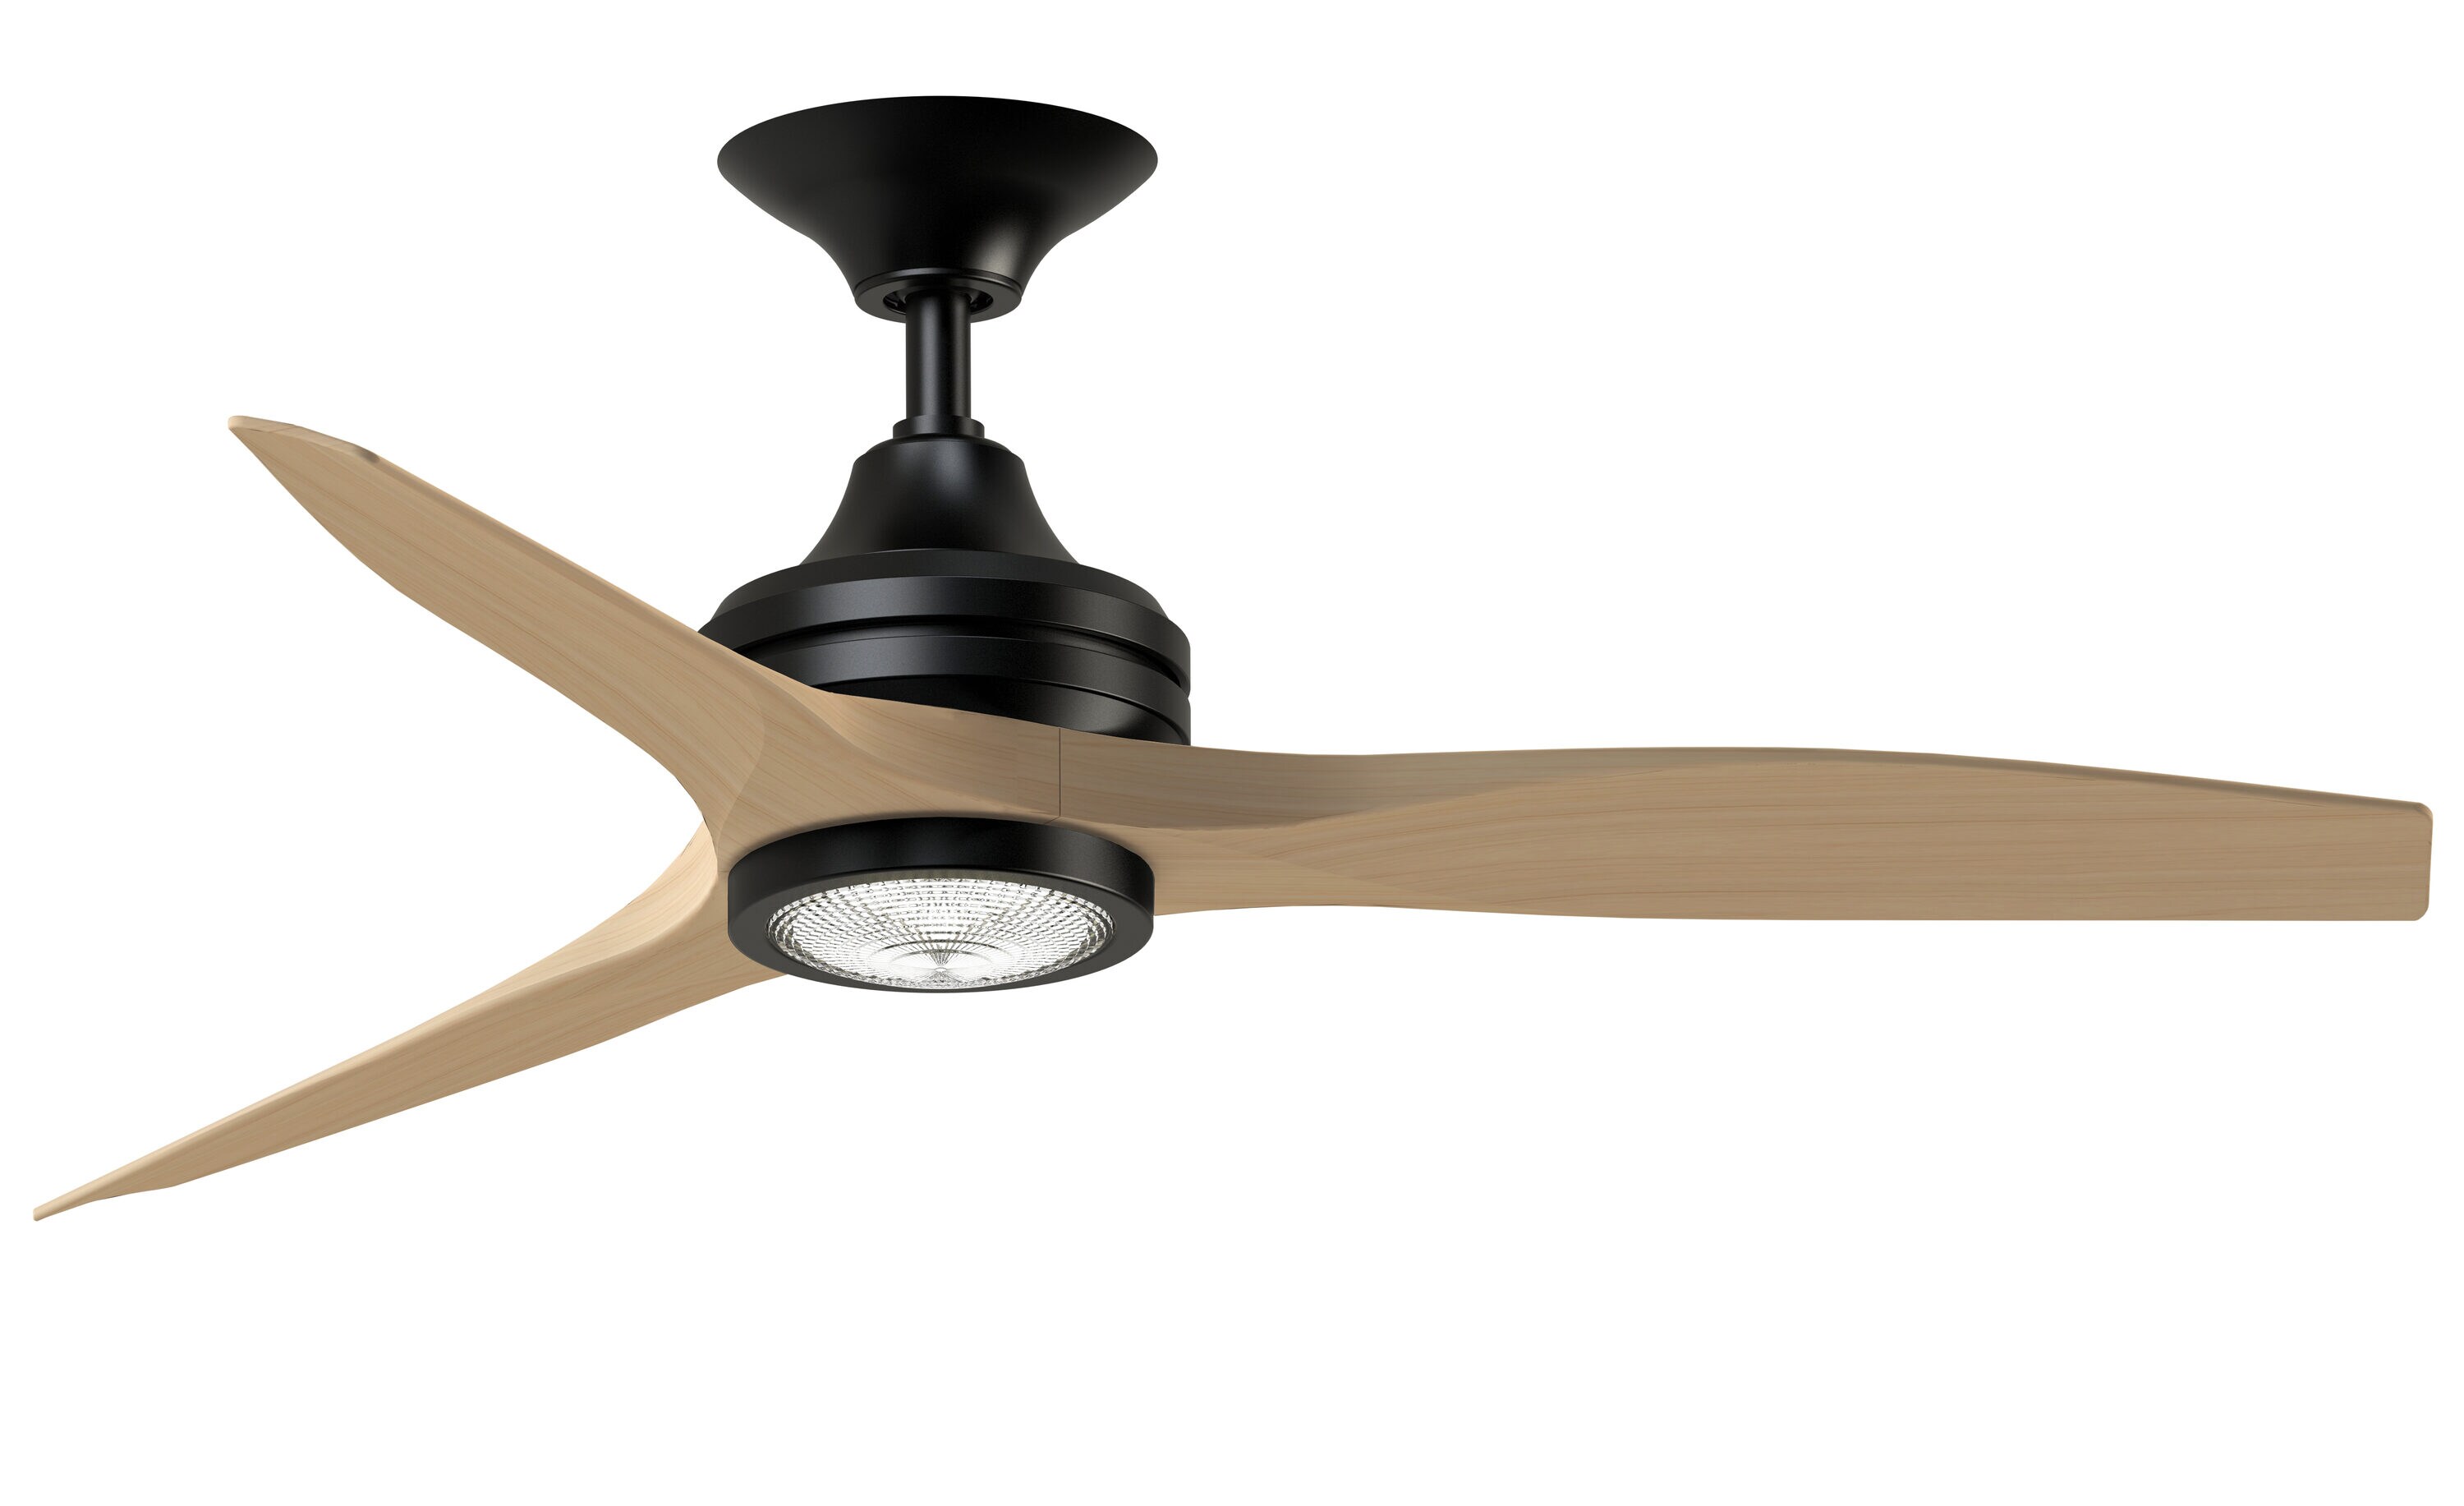 Spitfire 48-in Black LED Indoor/Outdoor Propeller Ceiling Fan with Light Remote (3-Blade) | - Fanimation FP6721BBL-48N-LK